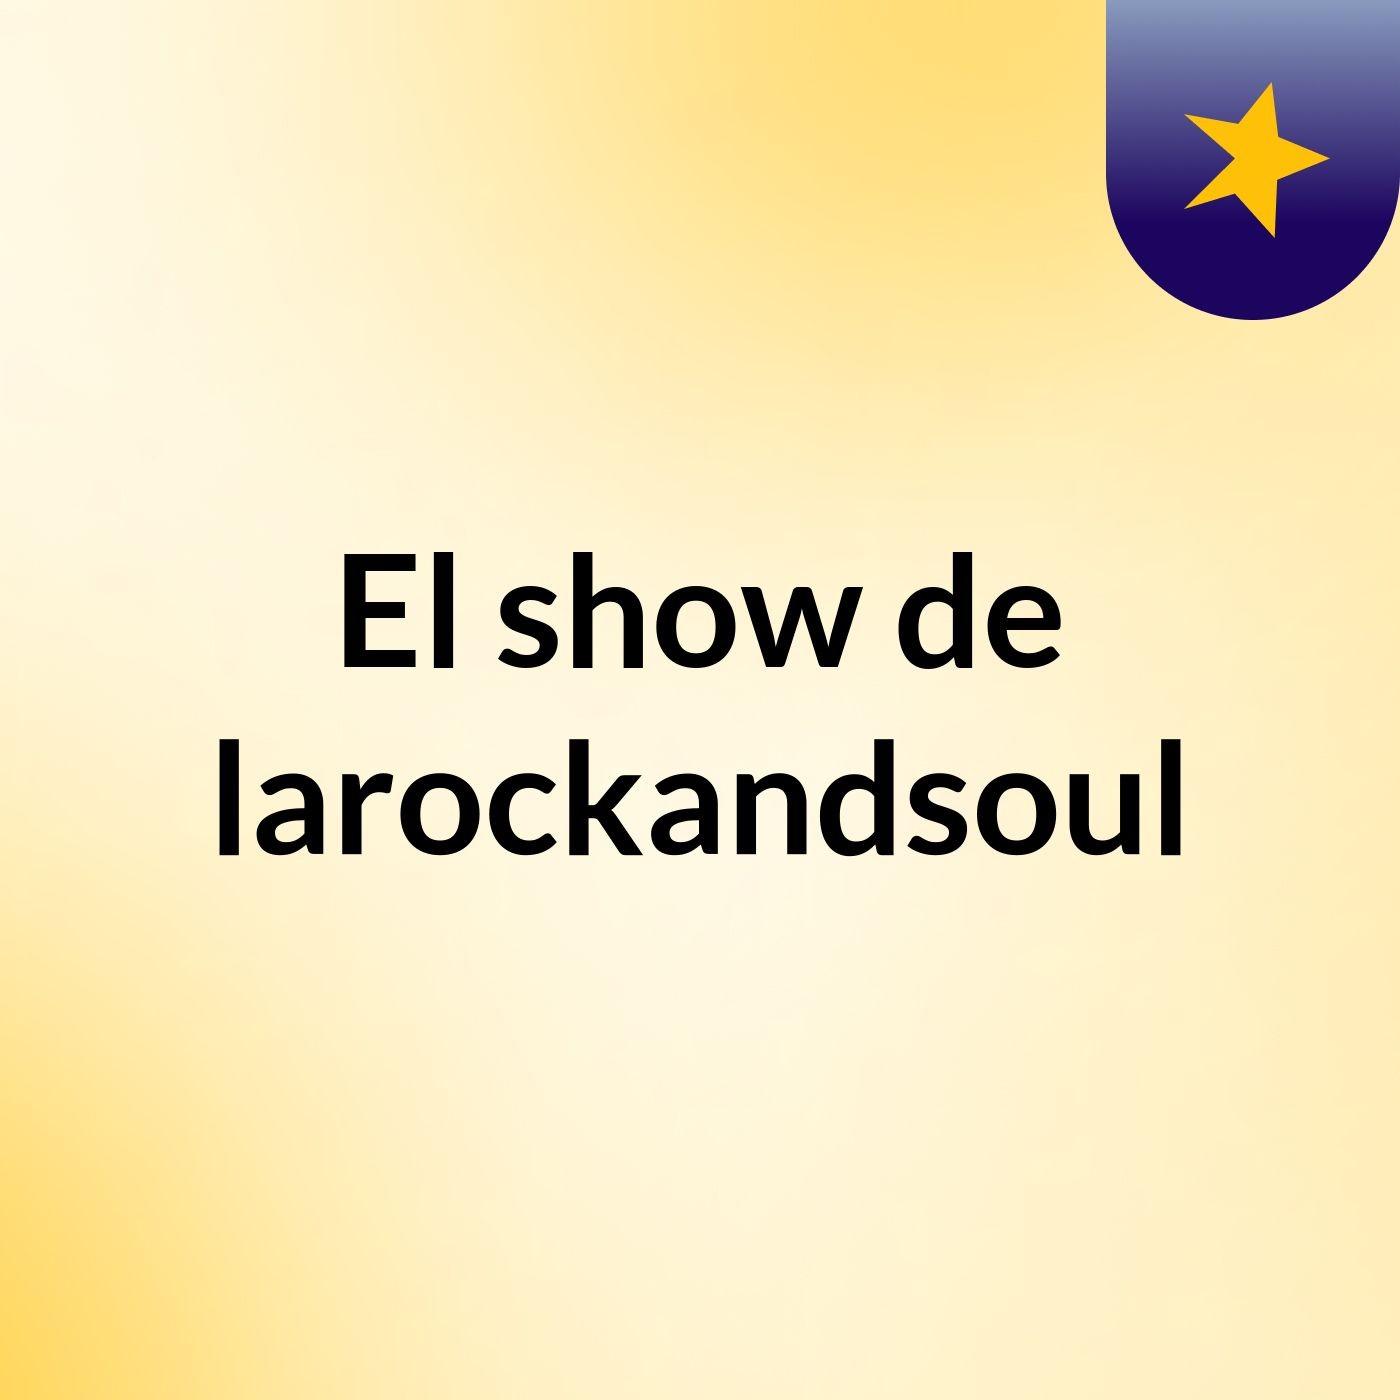 El show de larockandsoul